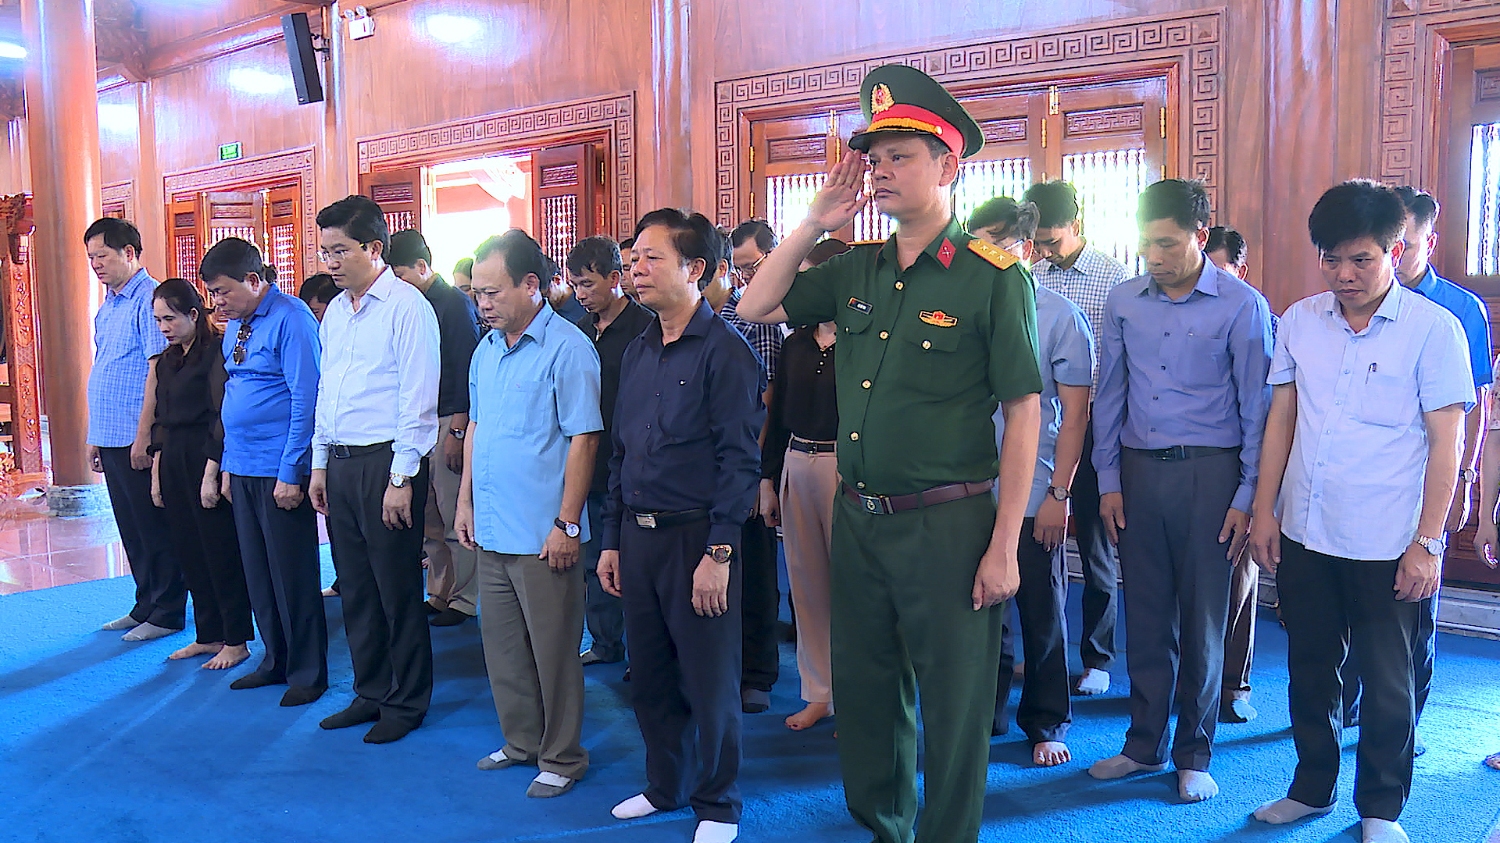 Đoàn công tác thị xã Ba Đồn dành 1 phút mặc niệm trước hương hồn các Anh hùng, Liệt sỹ tại Đền thờ Bác Hồ và các anh hùng liệt sĩ Quảng Bình